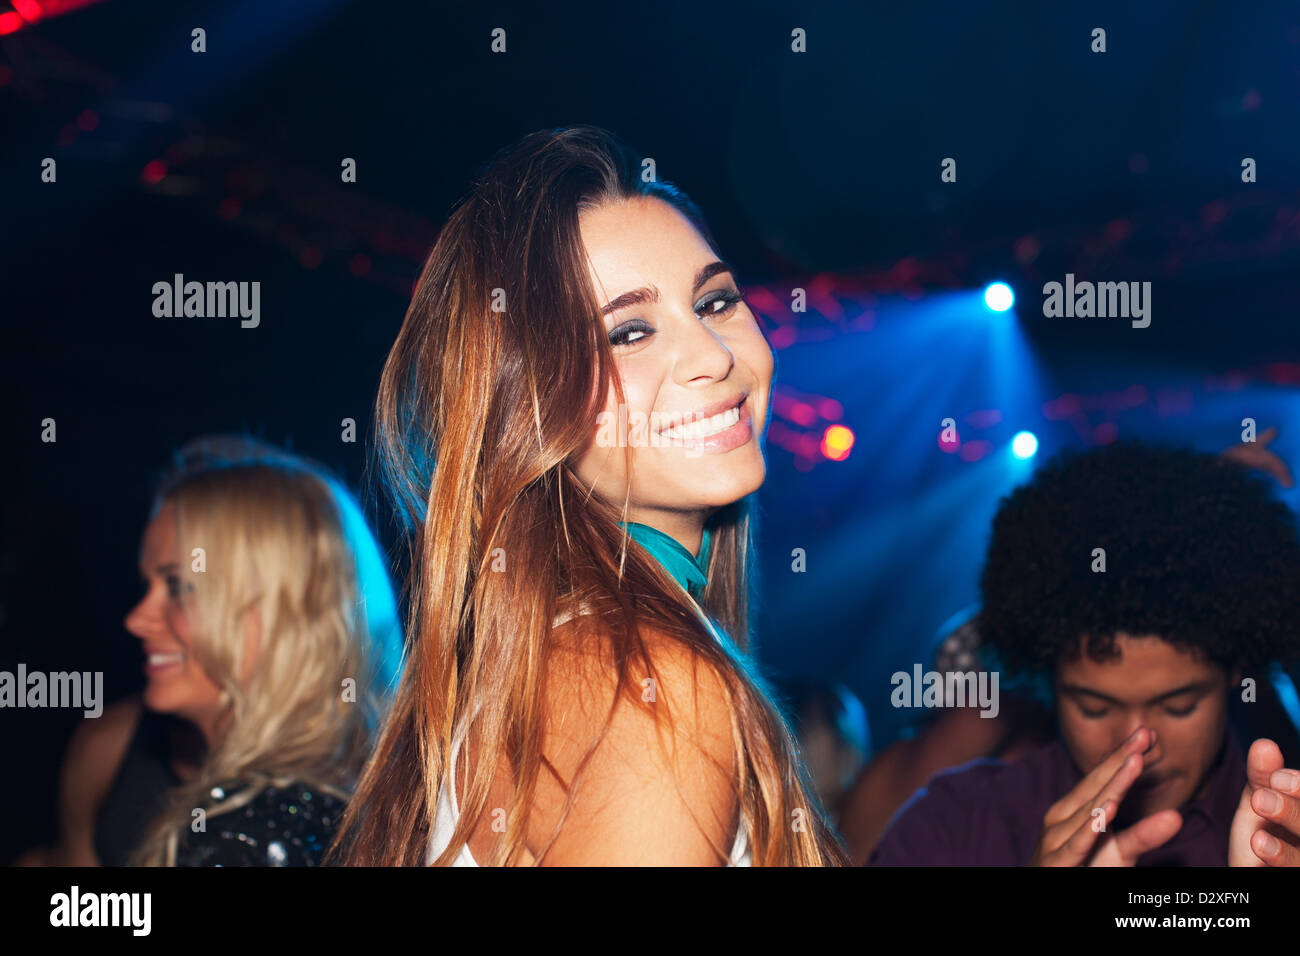 Porträt von lächelnden Frau auf der Tanzfläche der Disco Stockfoto